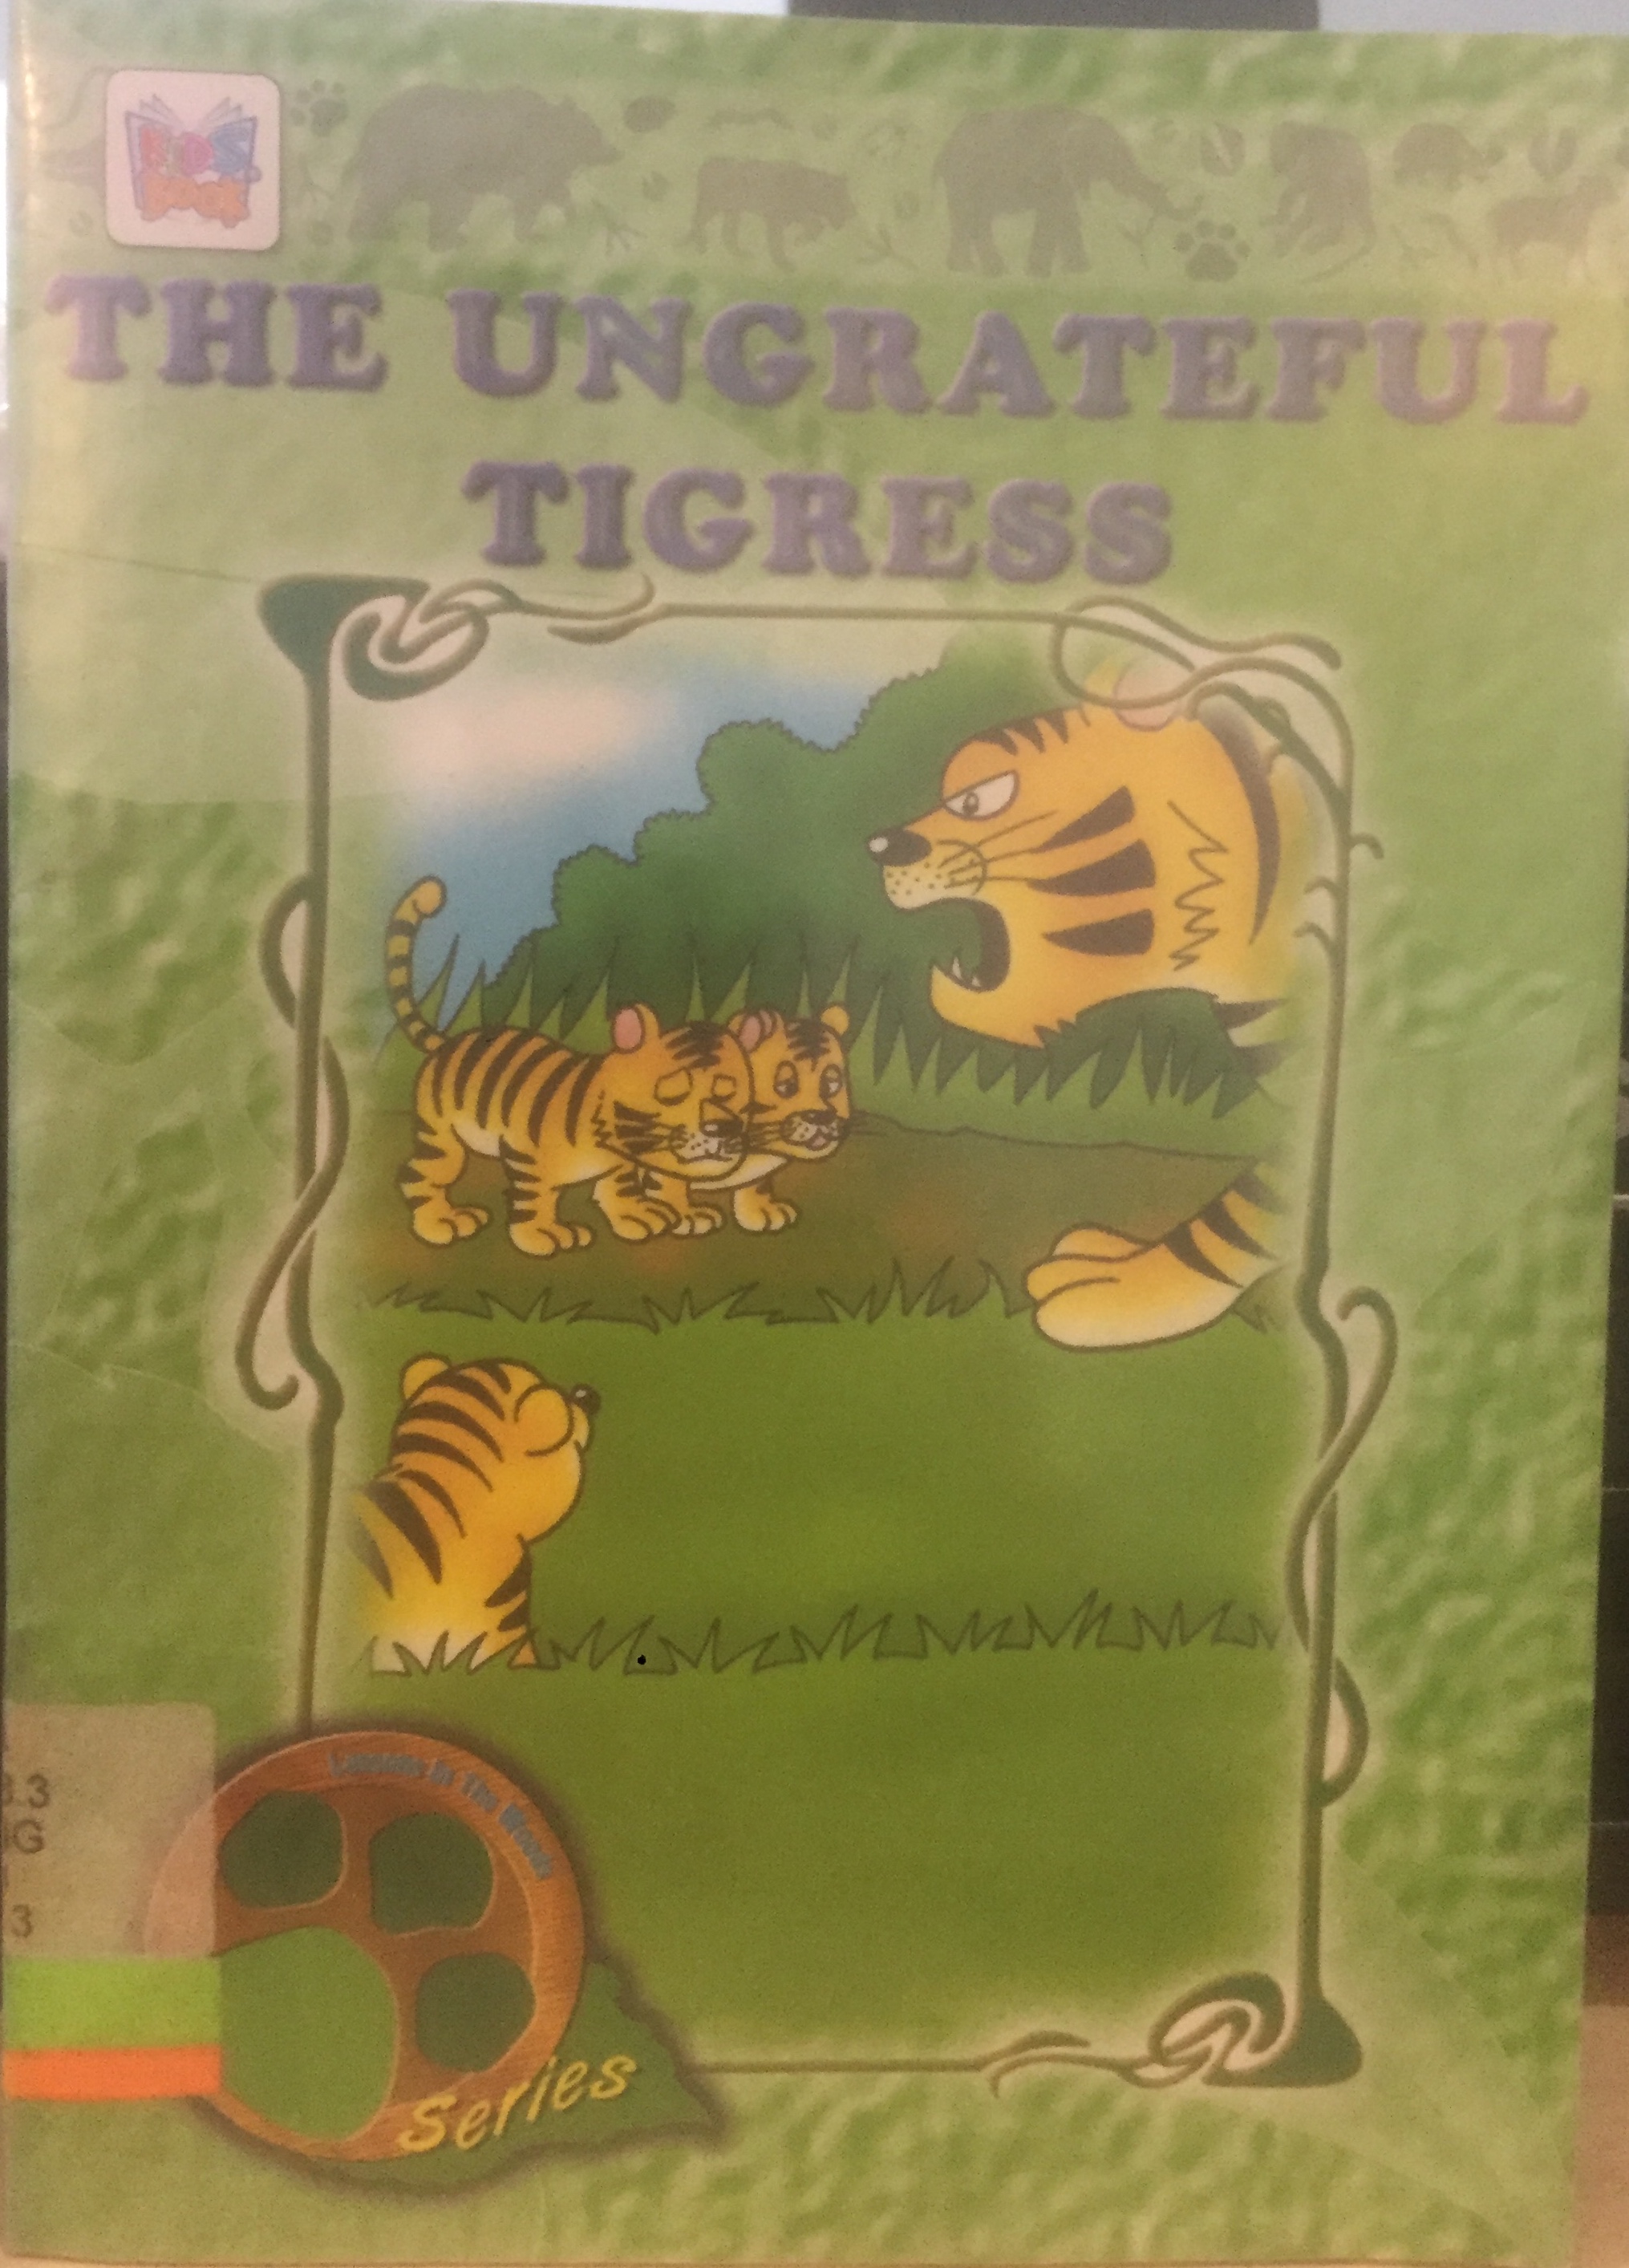 The ungrateful tigress